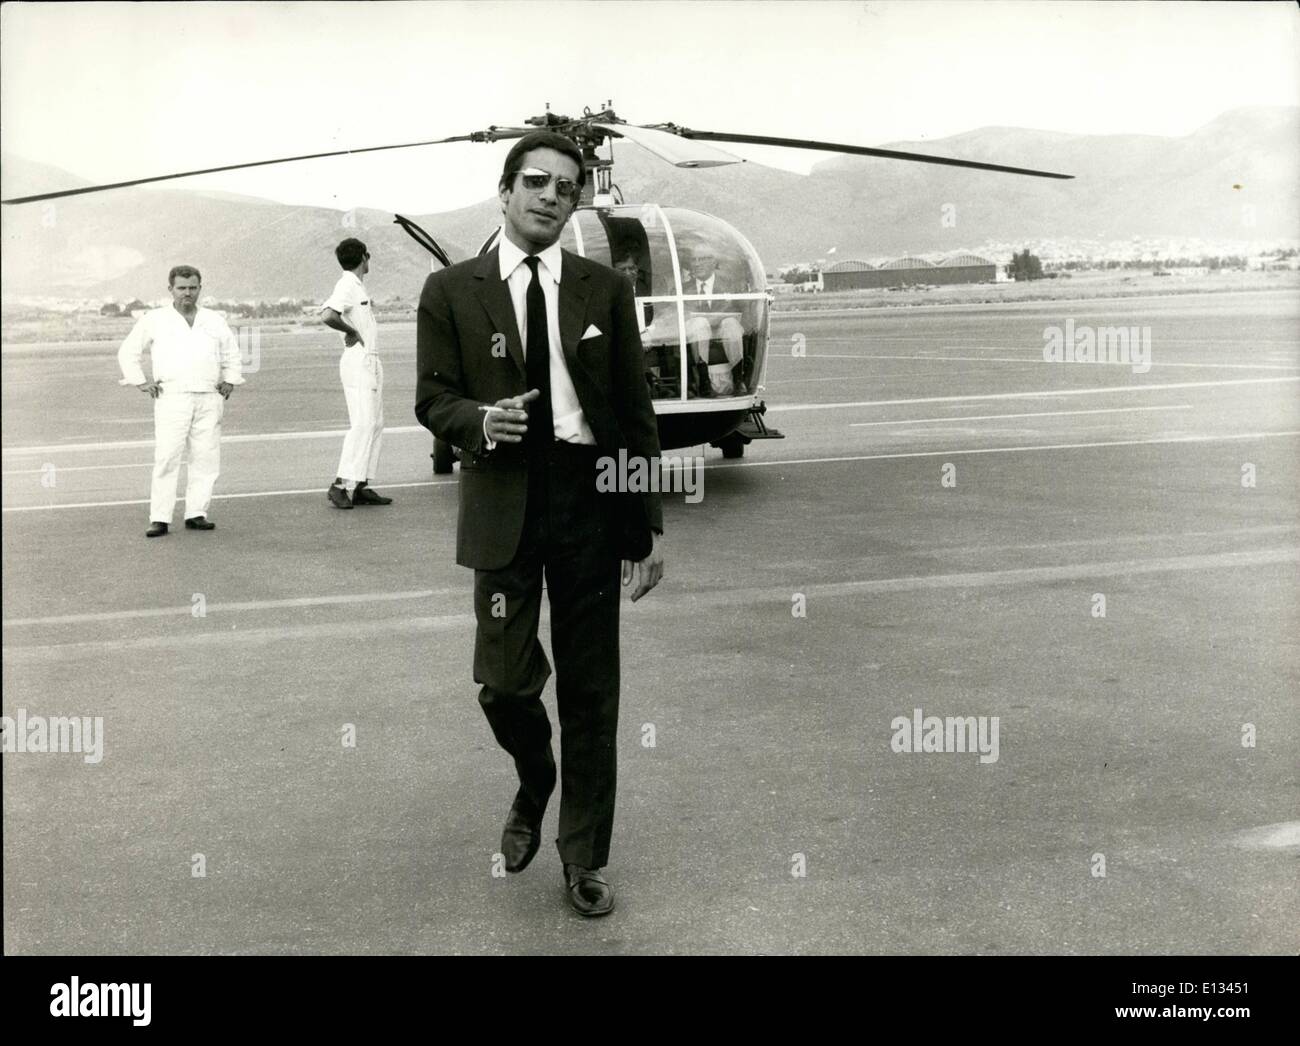 Febbraio 26, 2012 - Alexander Onassis poste con il suo elicottero privato presso l'aeroporto di Atene, il luogo dove è stato ucciso nel gennaio 1973 quando il suo aereo si è schiantato poco dopo che aveva preso il largo. Foto Stock